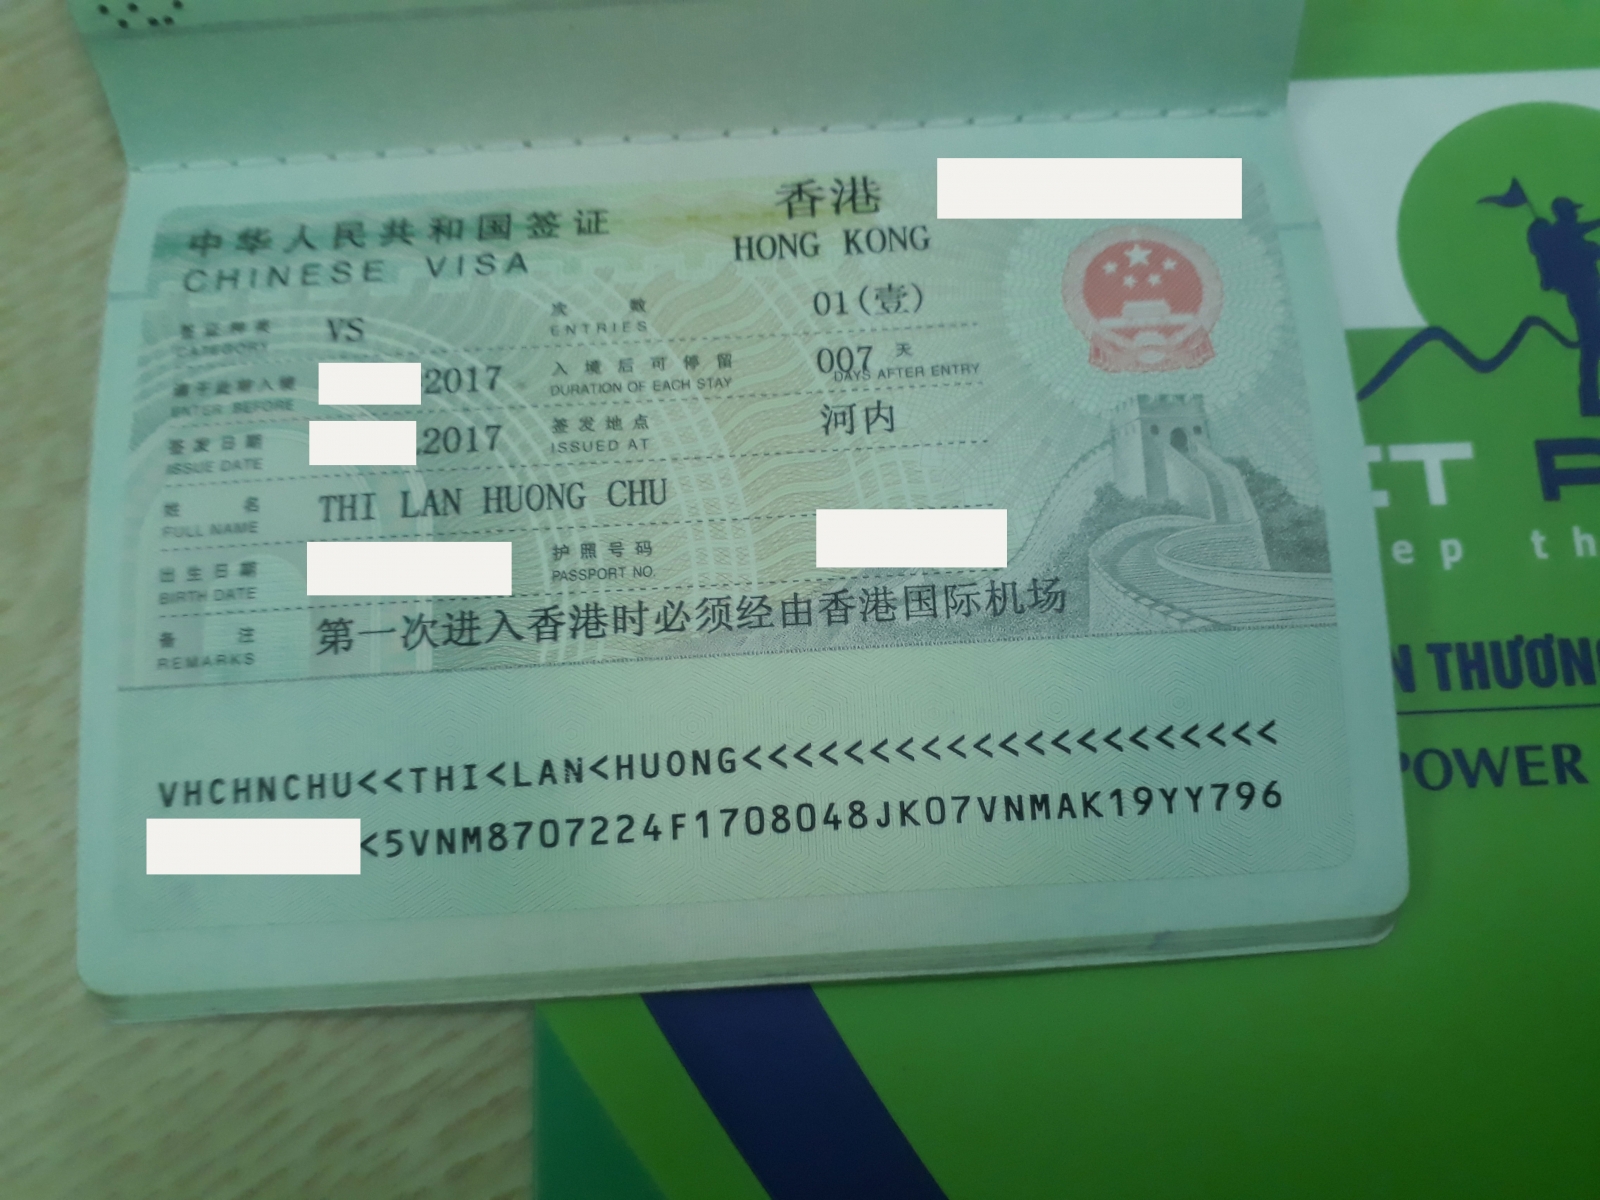 Chúc mừng chị Chu Thị Lan Hương đã có Visa Hồng Kông